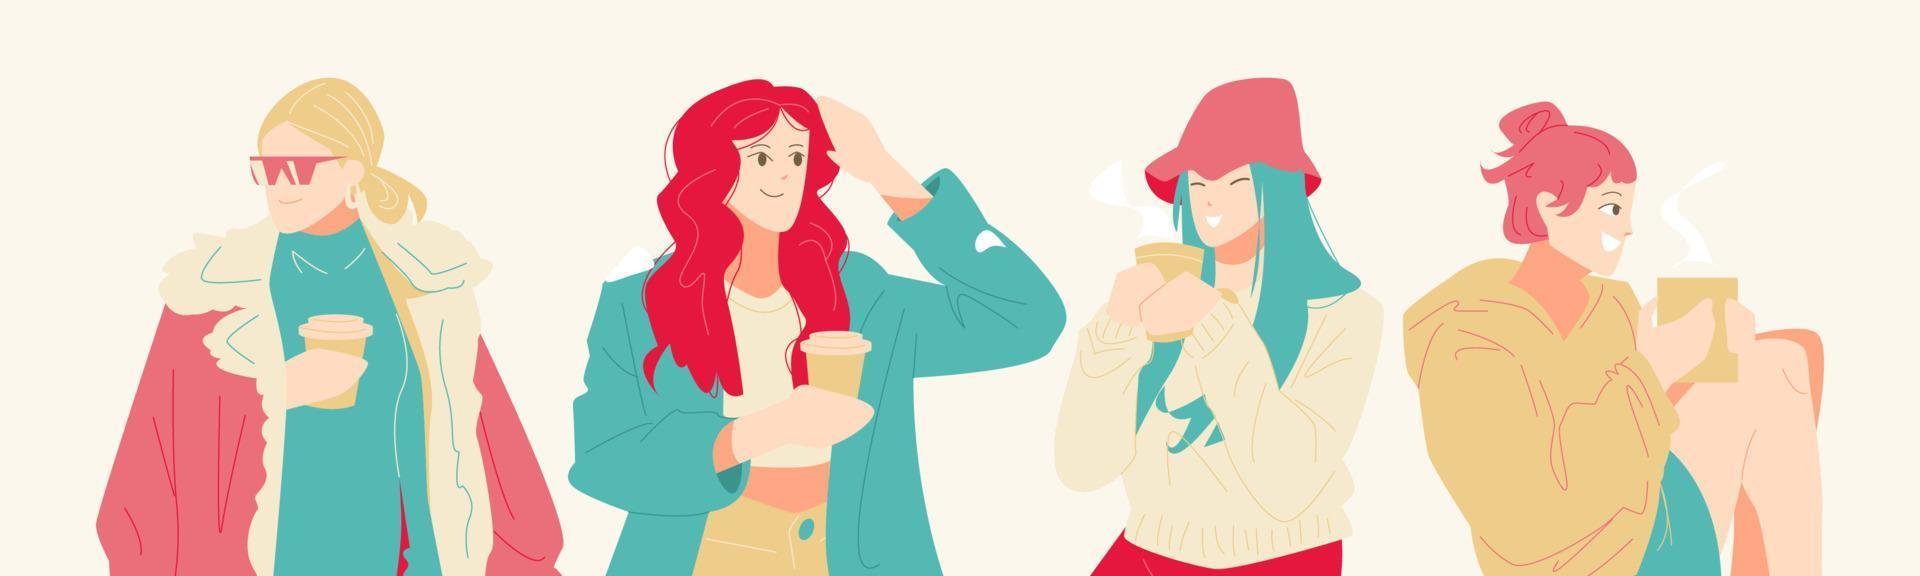 conjunto de personajes de mujeres hermosas en ropa de abrigo de estilo moderno con bebidas calientes. personaje animado. café, té, chocolate caliente. concepto de invierno, moda. ilustración vectorial plana vector